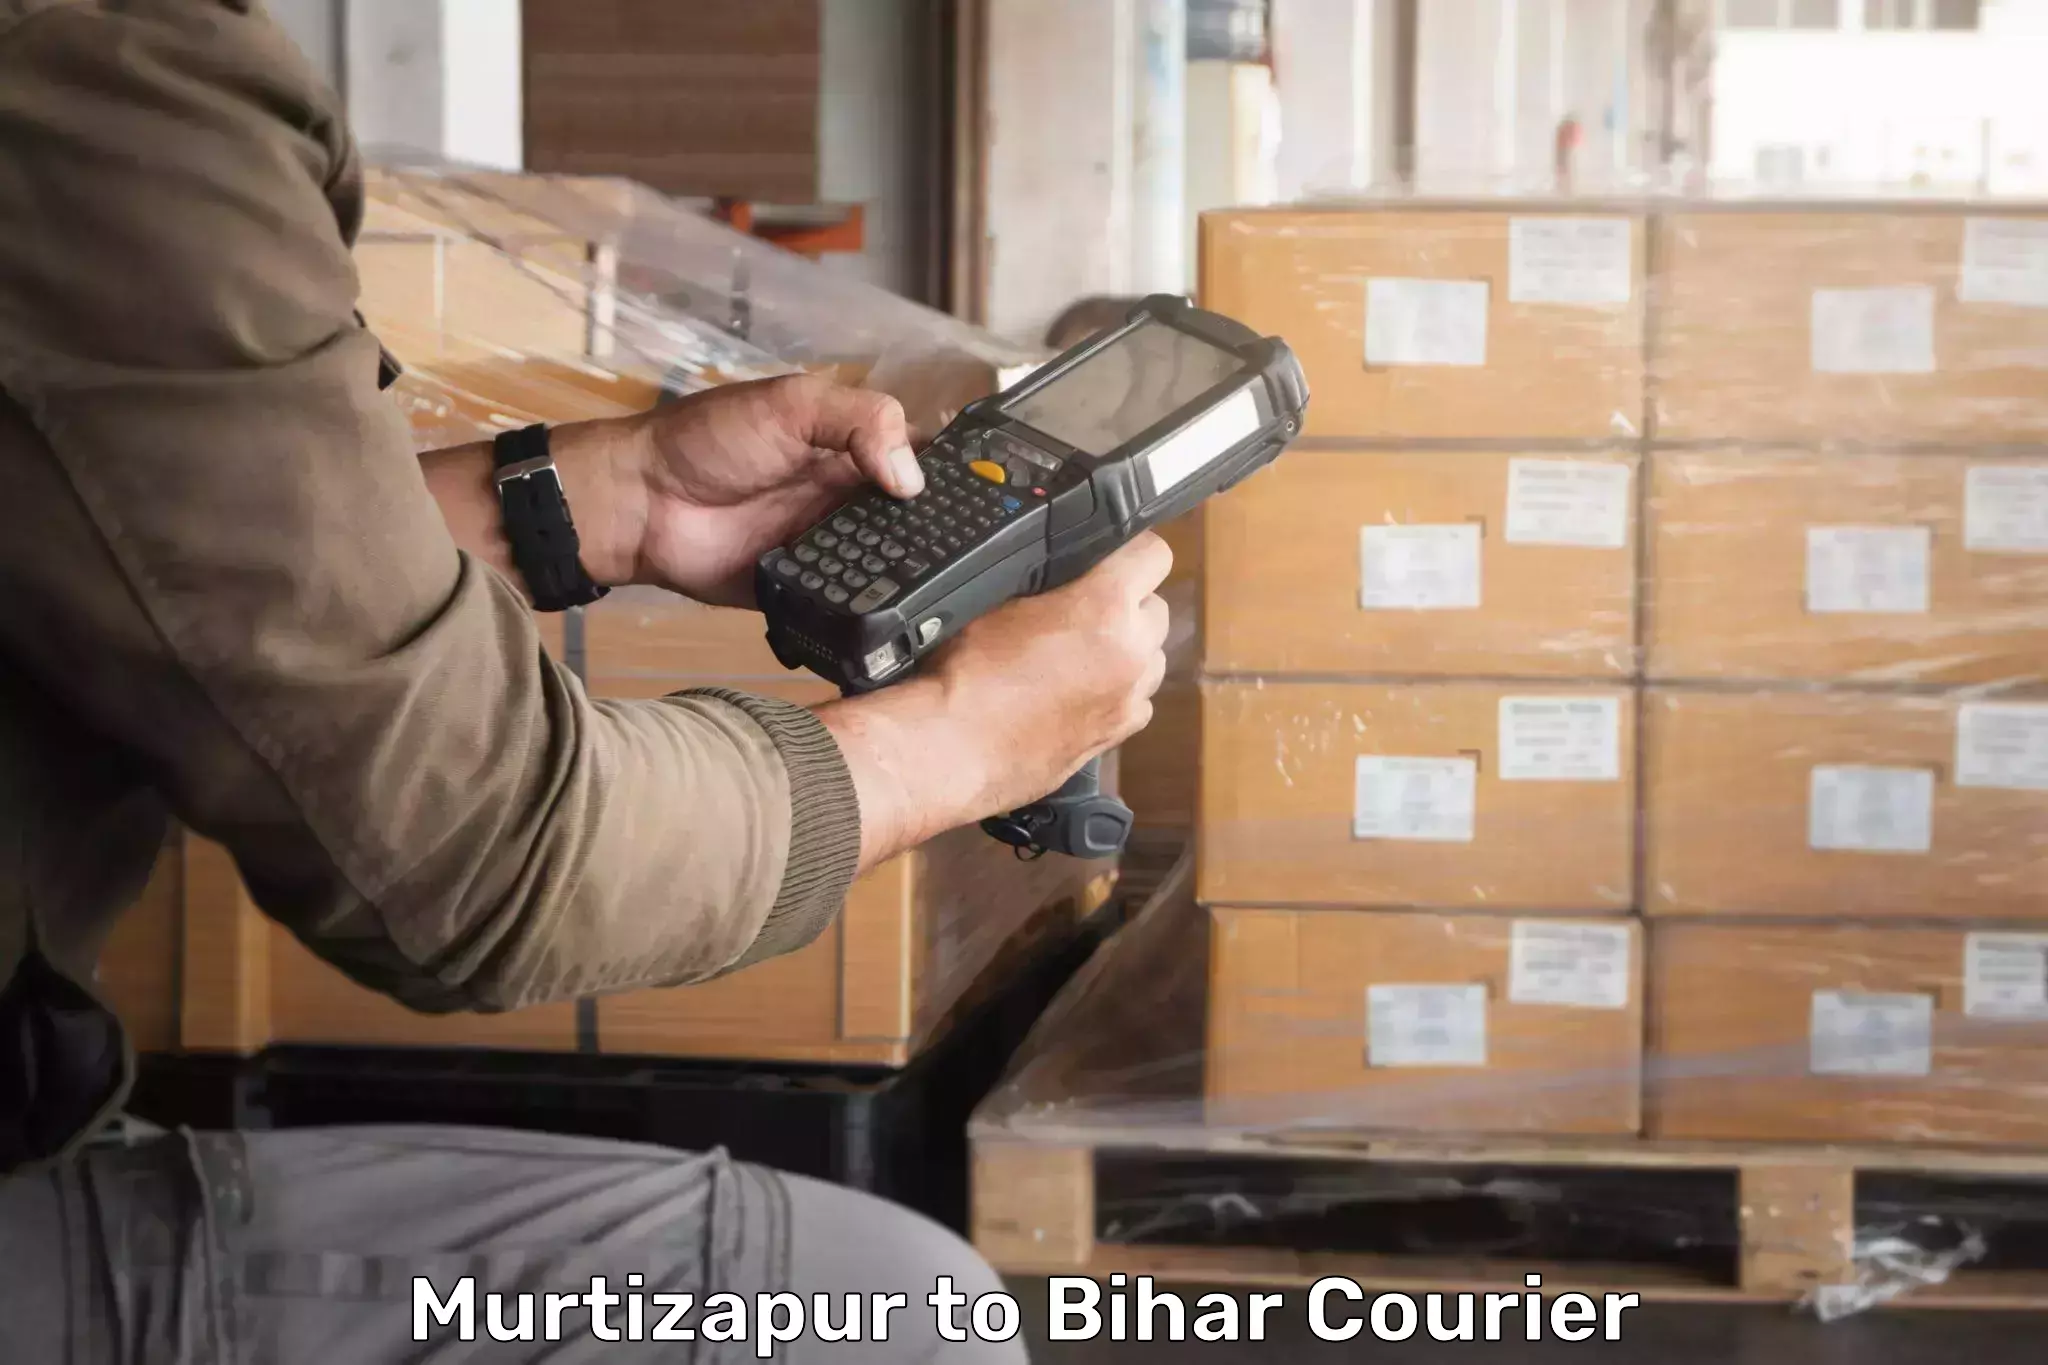 Cargo courier service Murtizapur to Bharwara